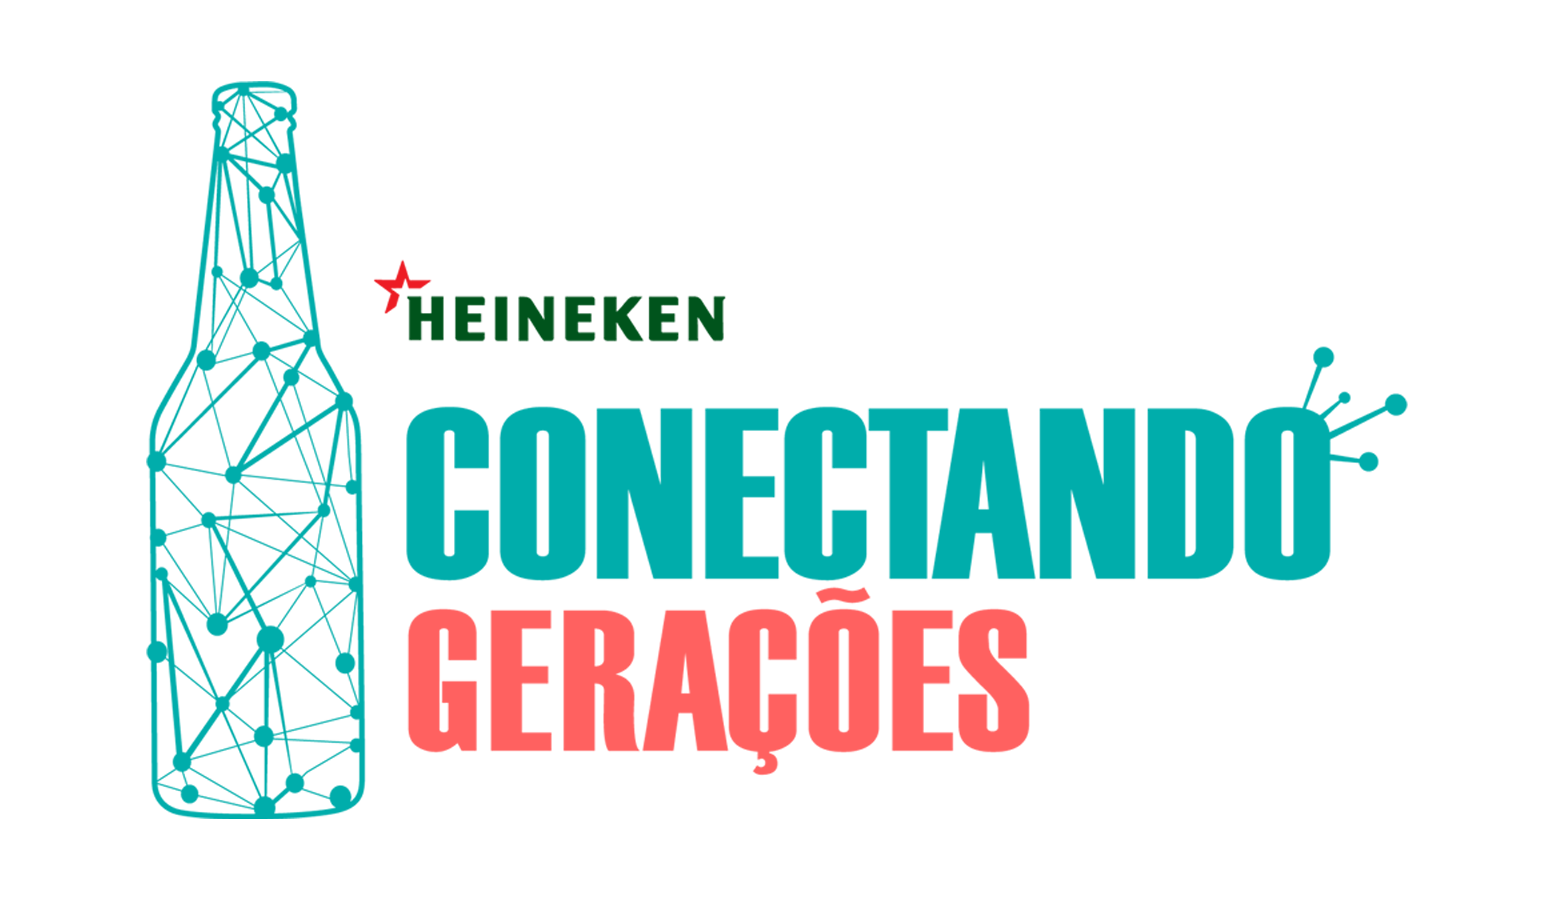 Conectando gerações promove a integração entre diferentes faixas etárias dentro da Heineken Brasil​